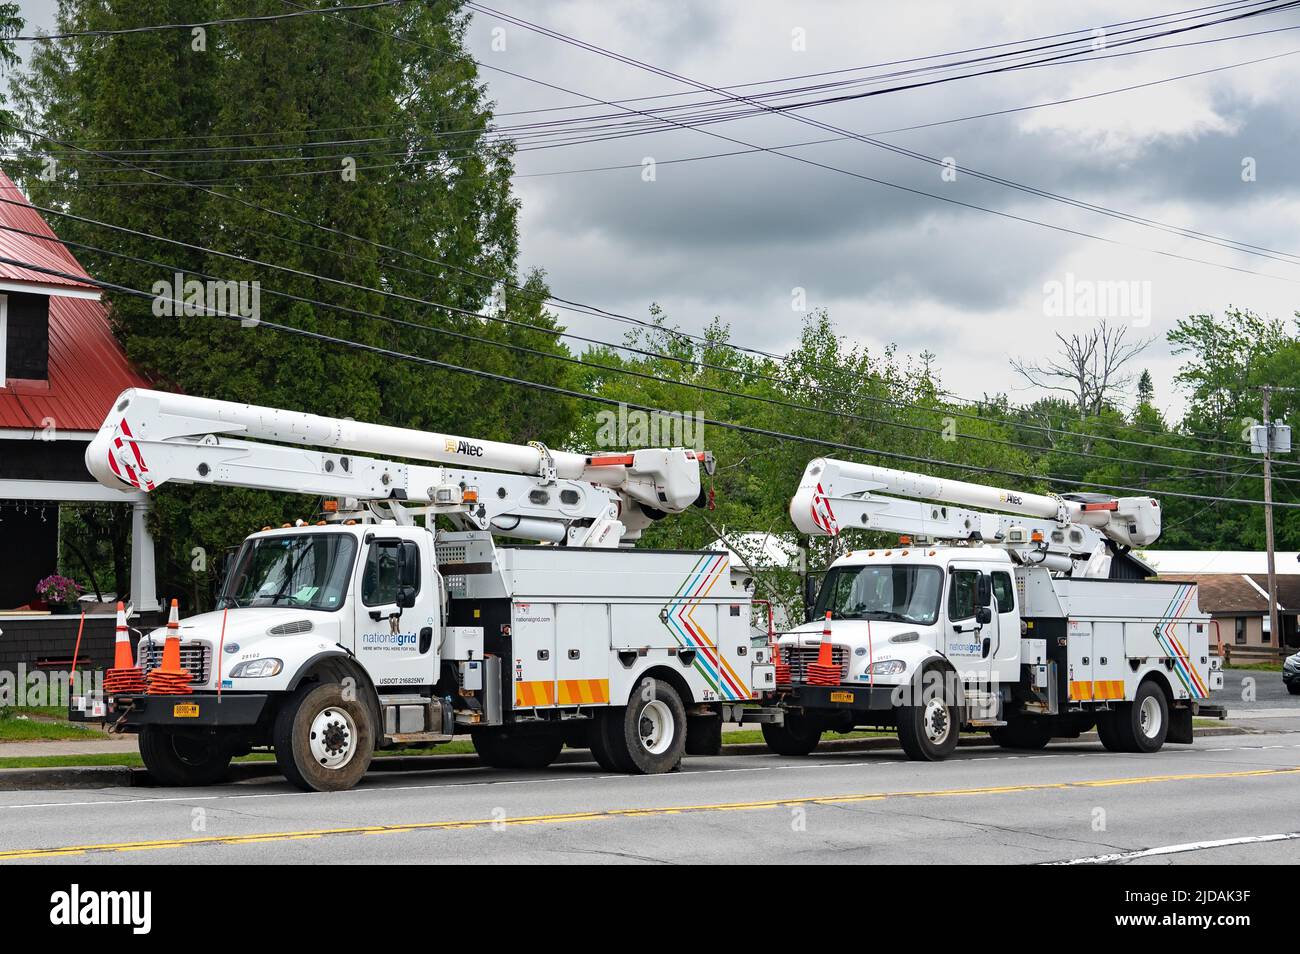 Dos camiones de servicio de National Grid equipados con elevadores de pluma para trabajar en líneas eléctricas, estacionados en Speculator, NY, EE.UU Foto de stock